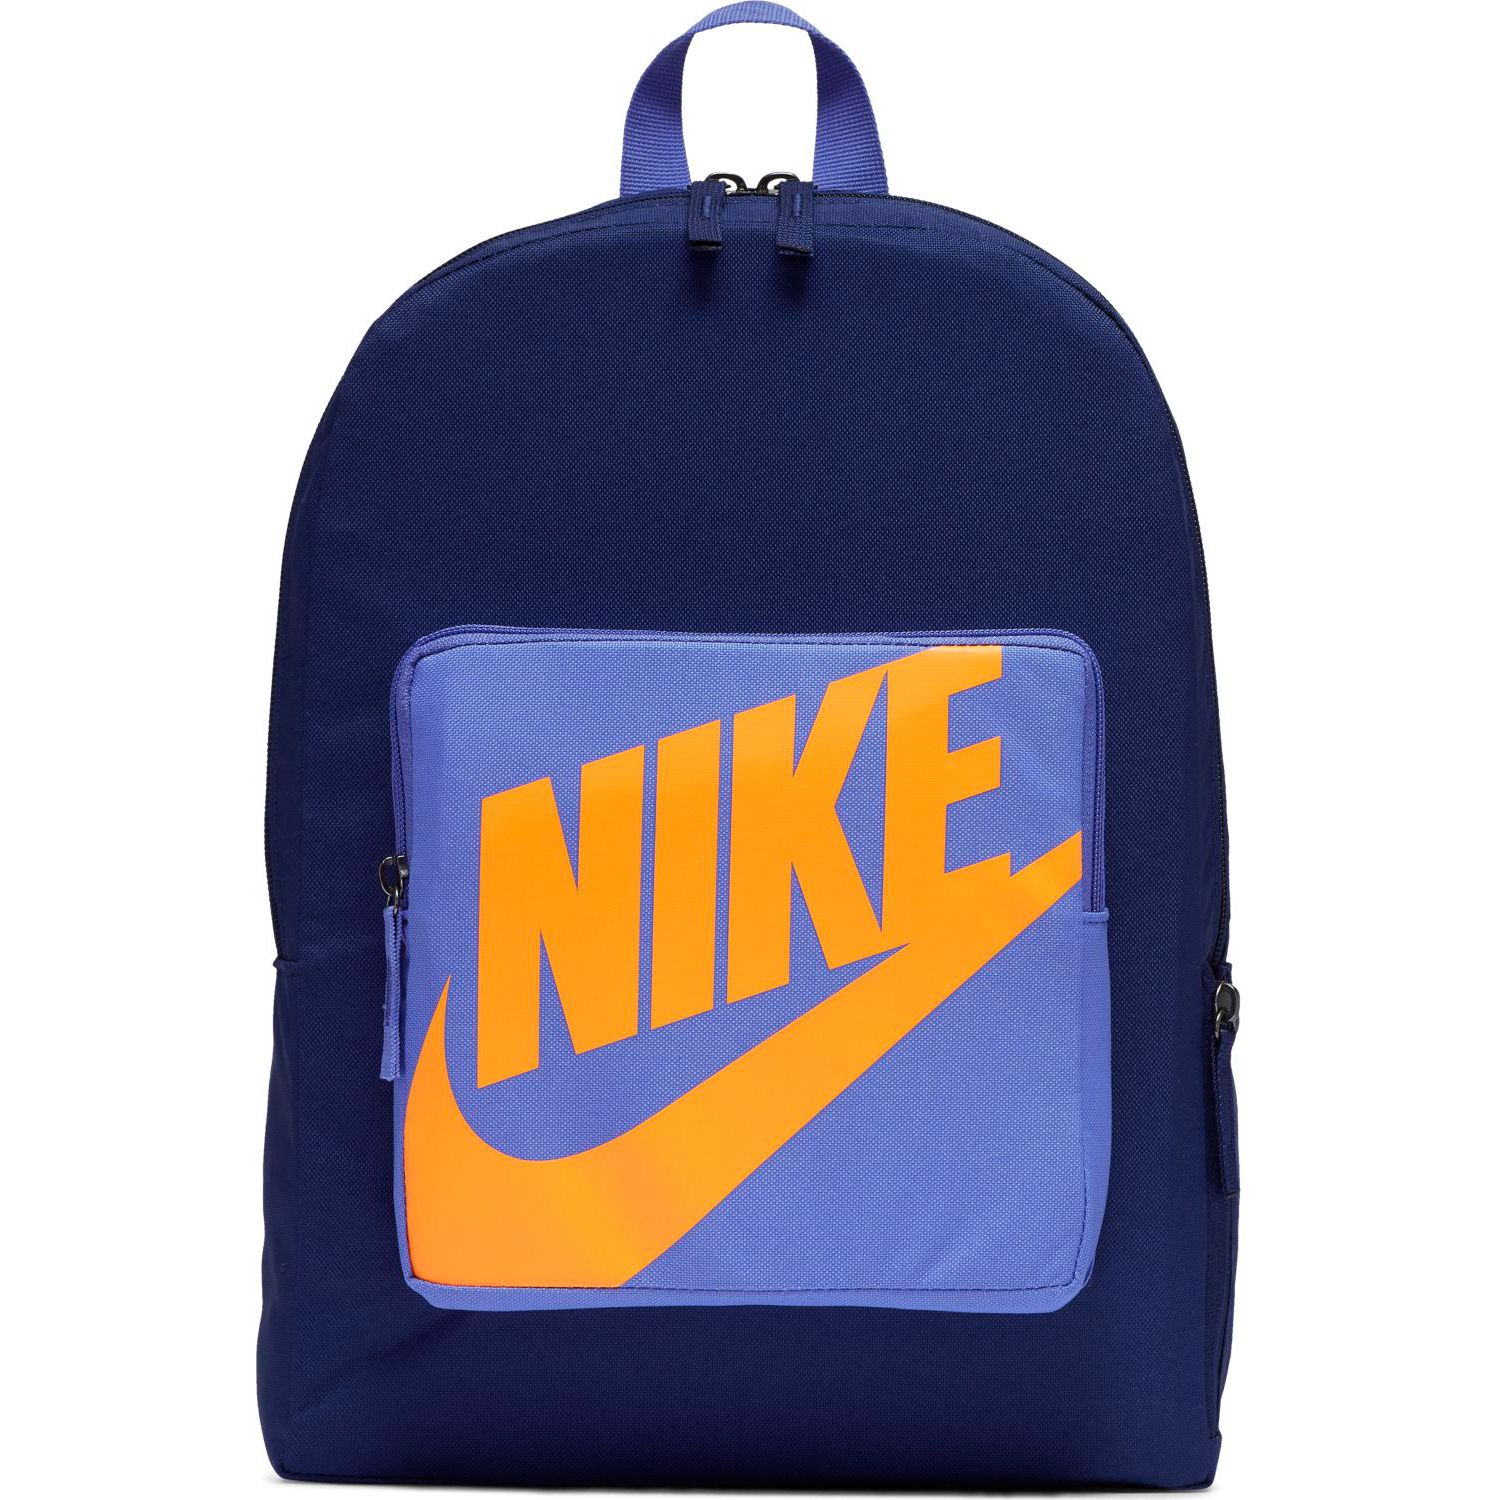 nike baby blue backpack